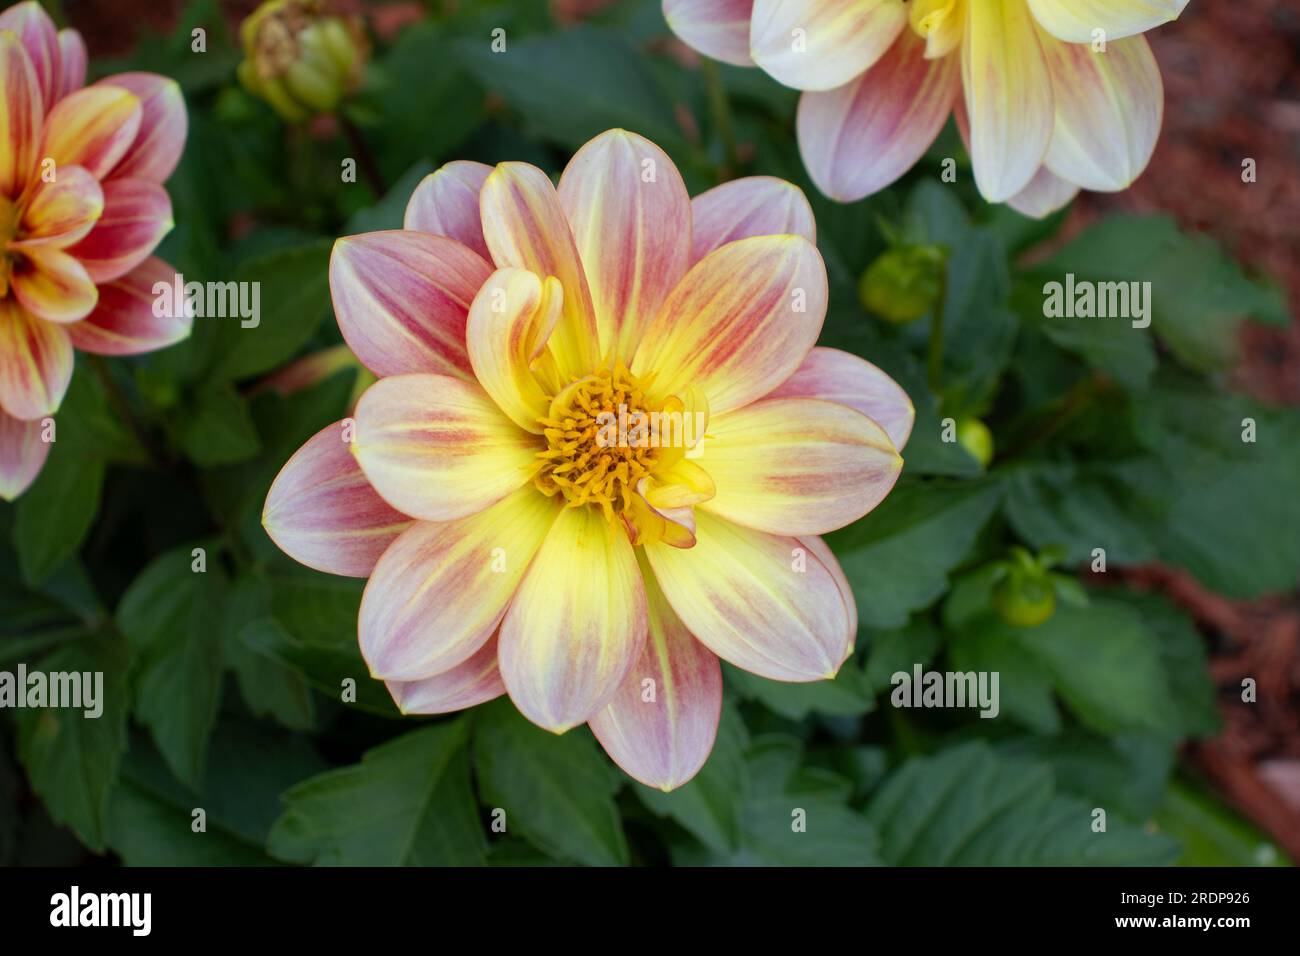 Lebendige Dahlienblume mit gelber Mitte und rosafarbenen Blüten – Nahaufnahme mit unscharfem Hintergrund aus Grün und anderen Blüten. Stockfoto